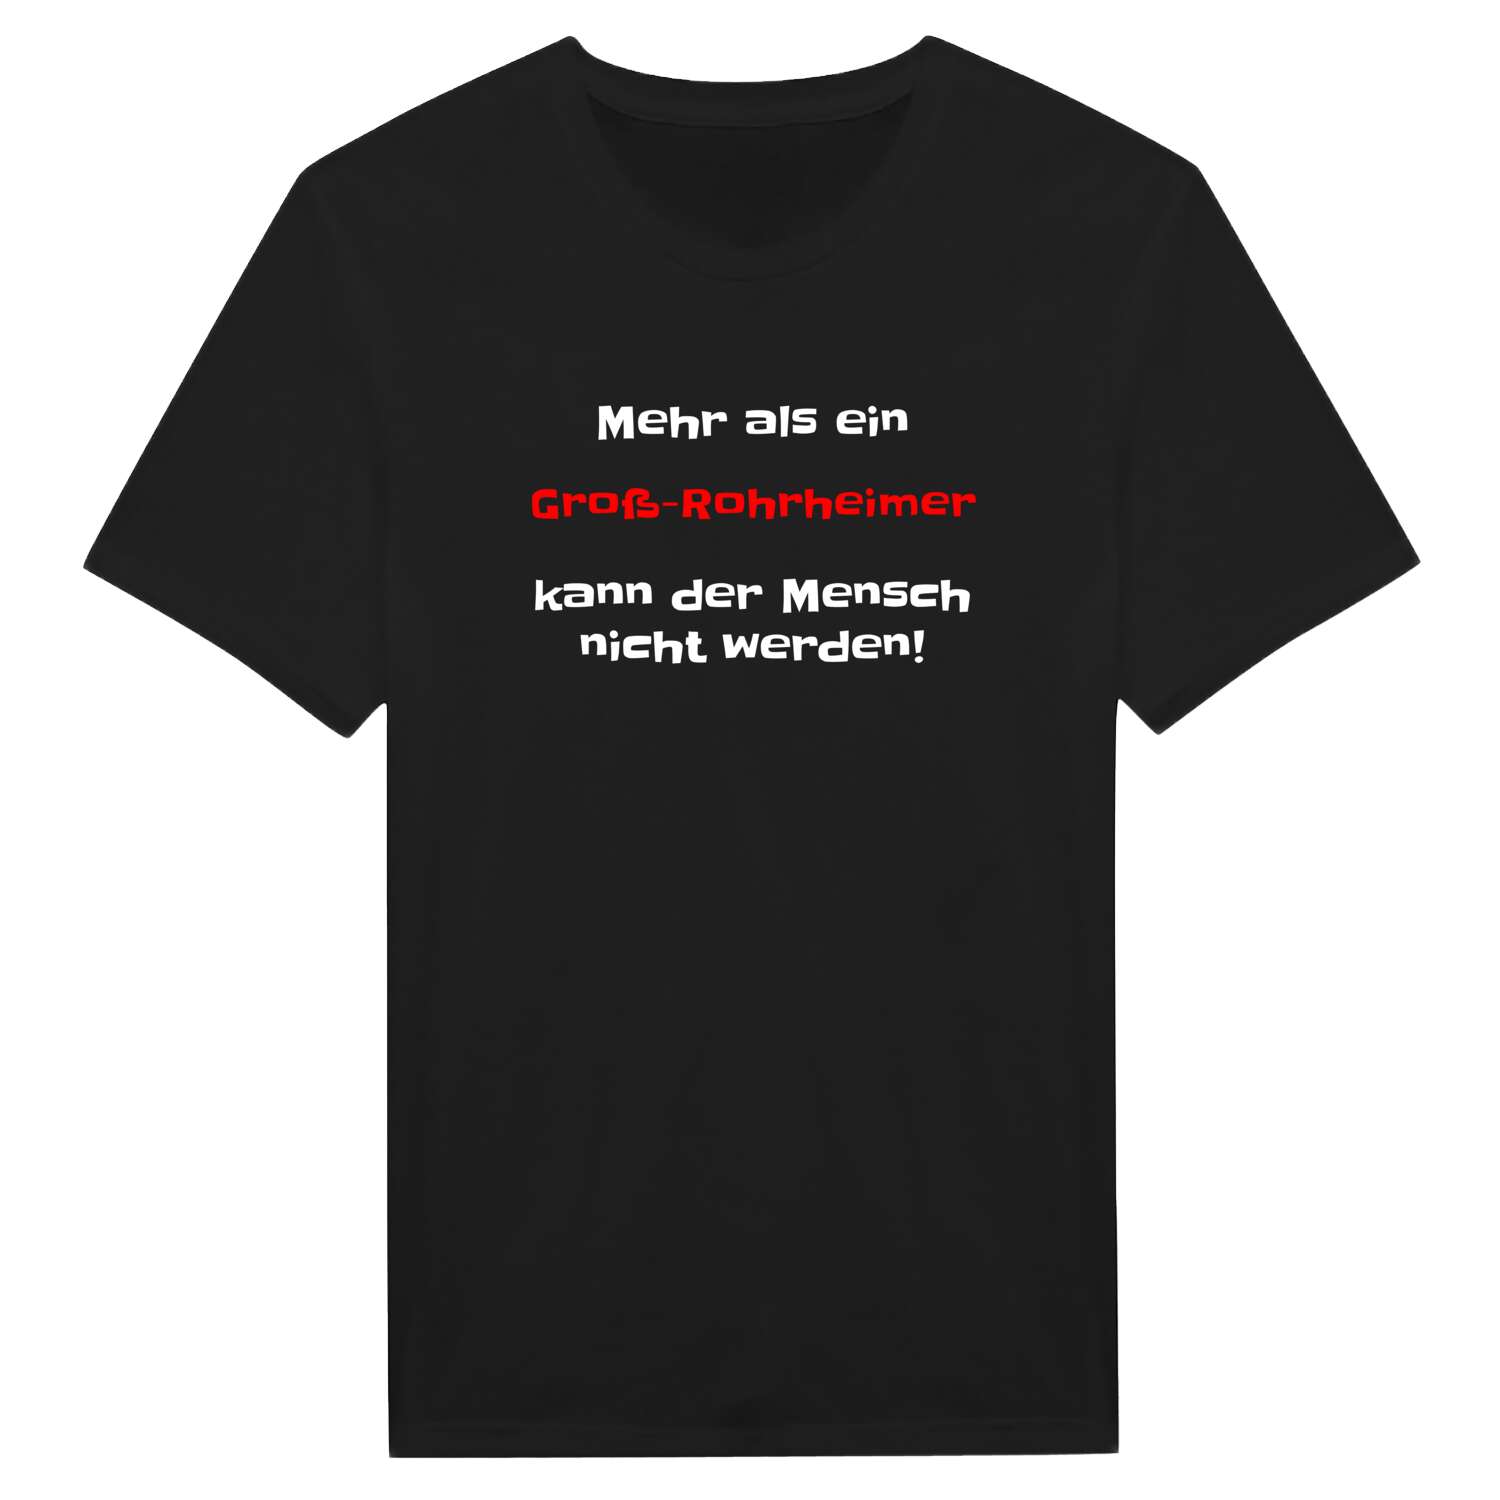 Groß-Rohrheim T-Shirt »Mehr als ein«